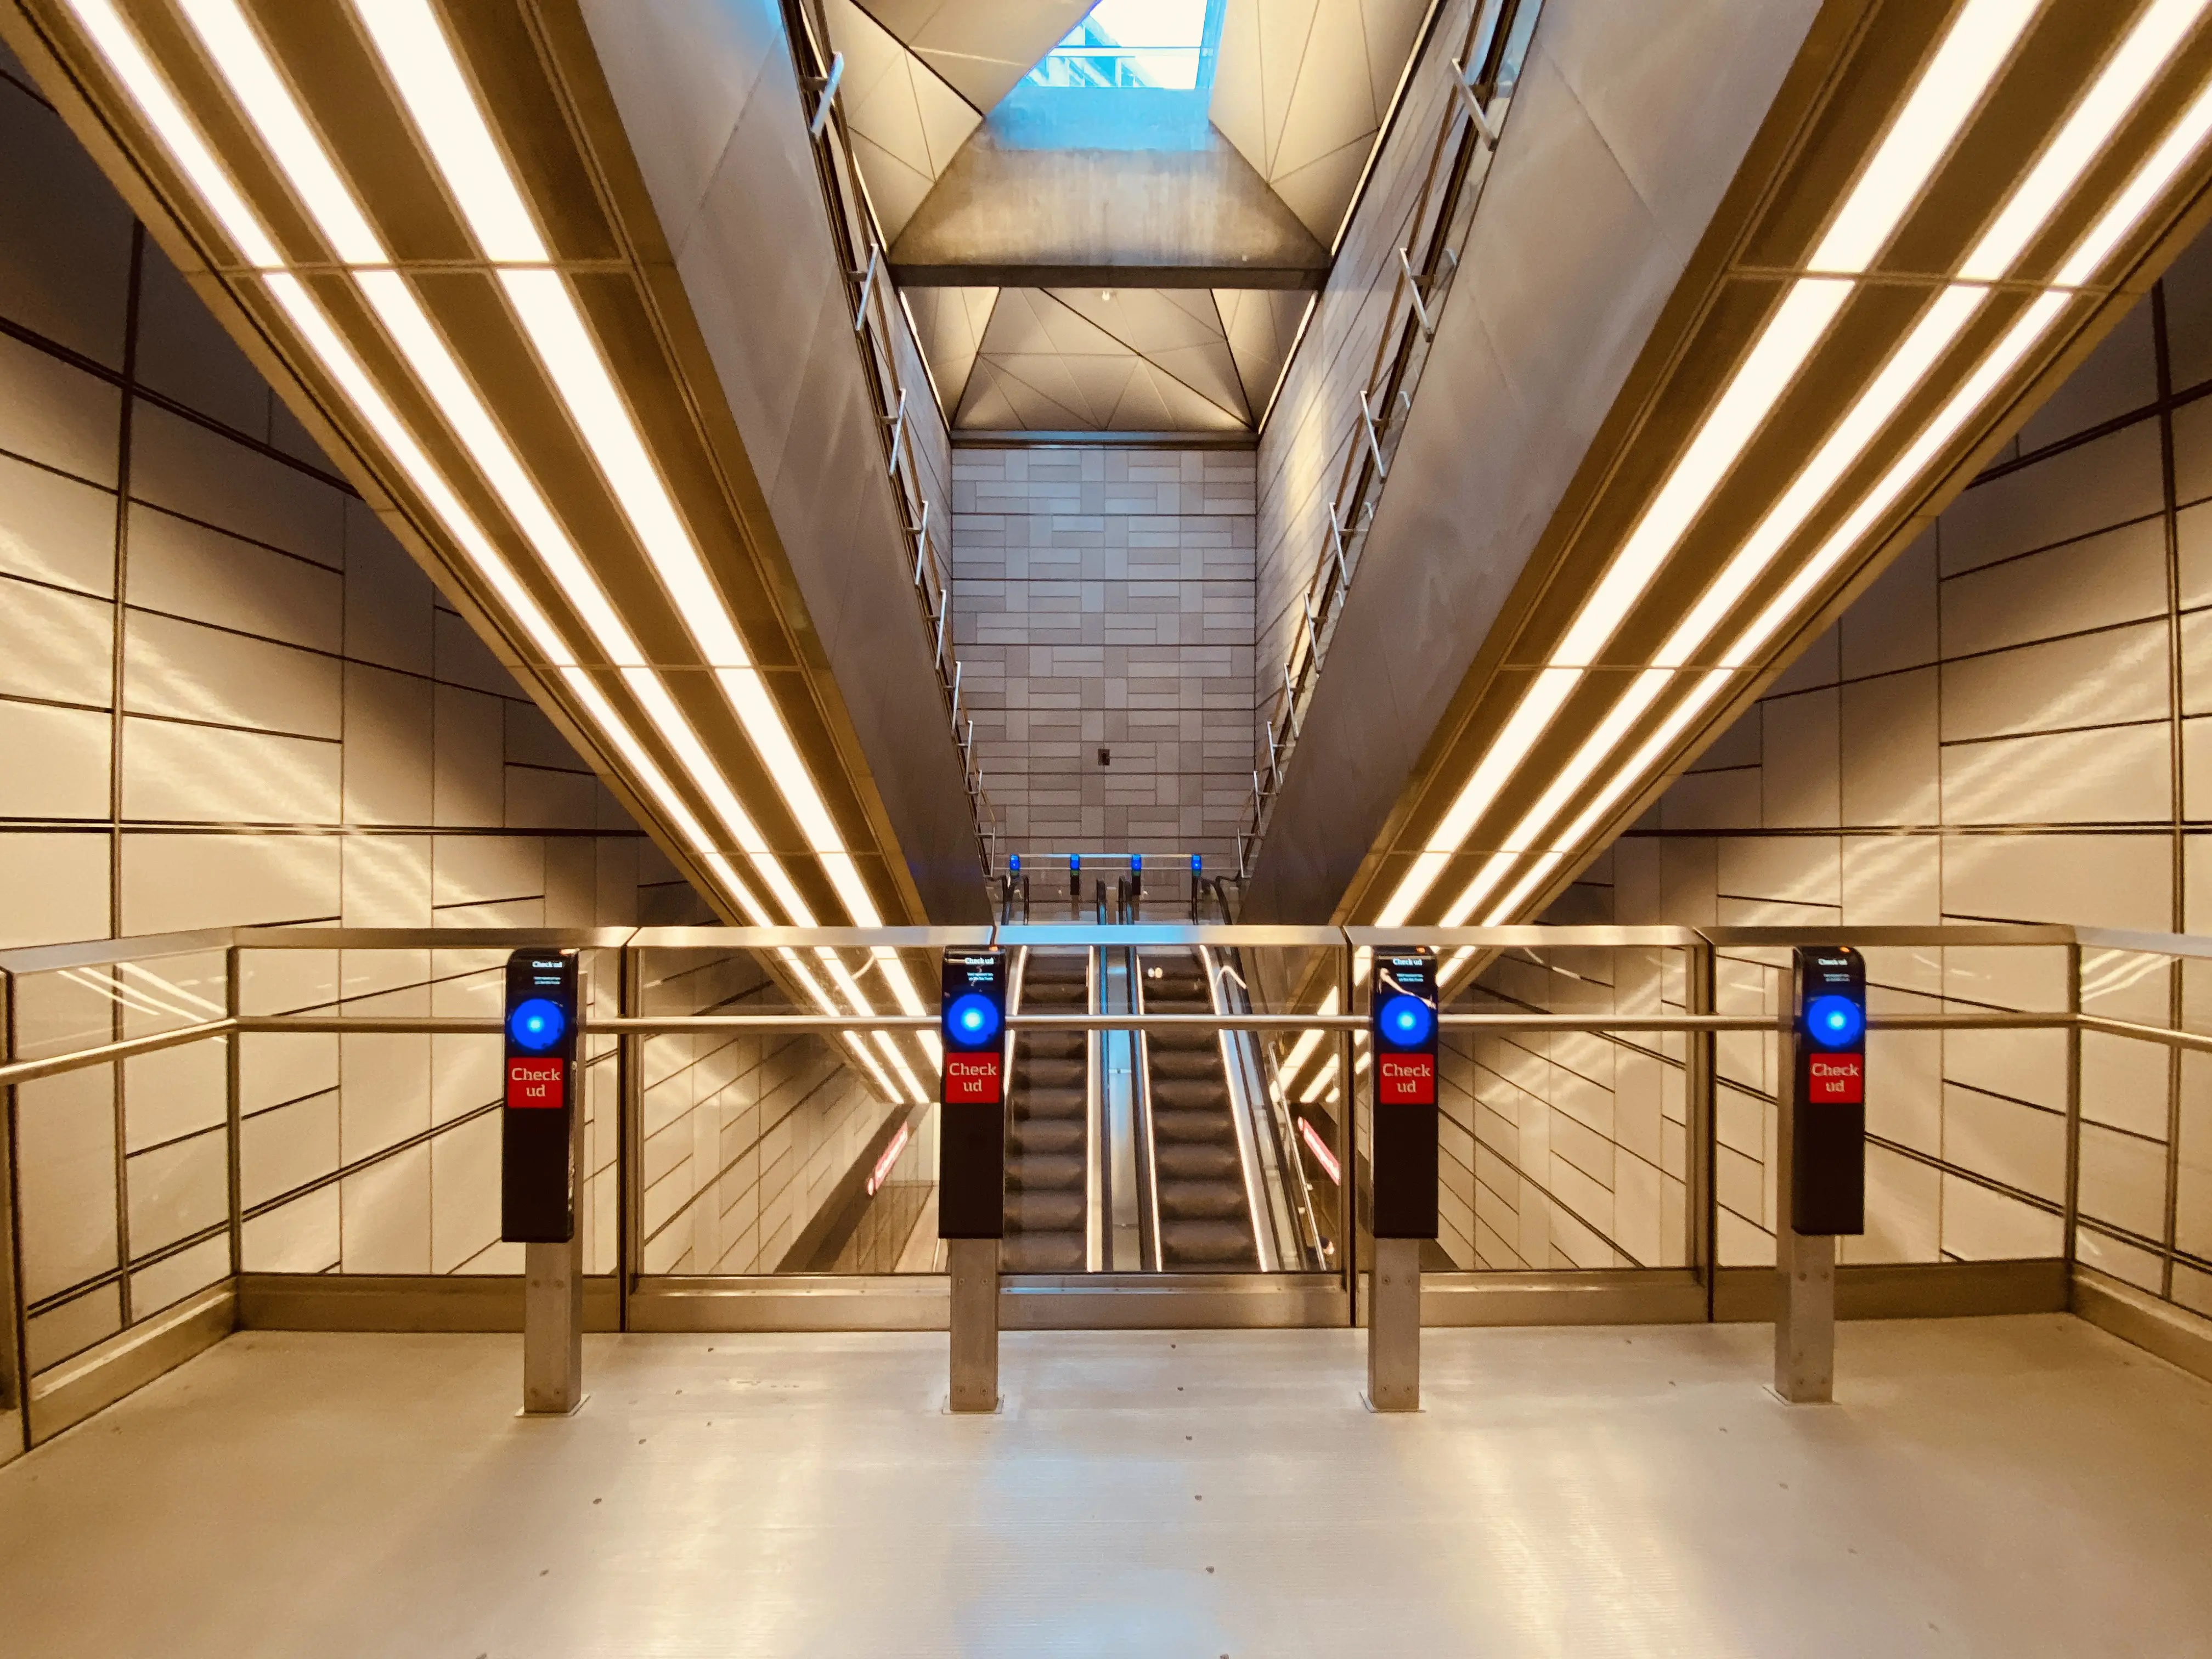 Billede af Poul Henningsens Plads Metrostation.